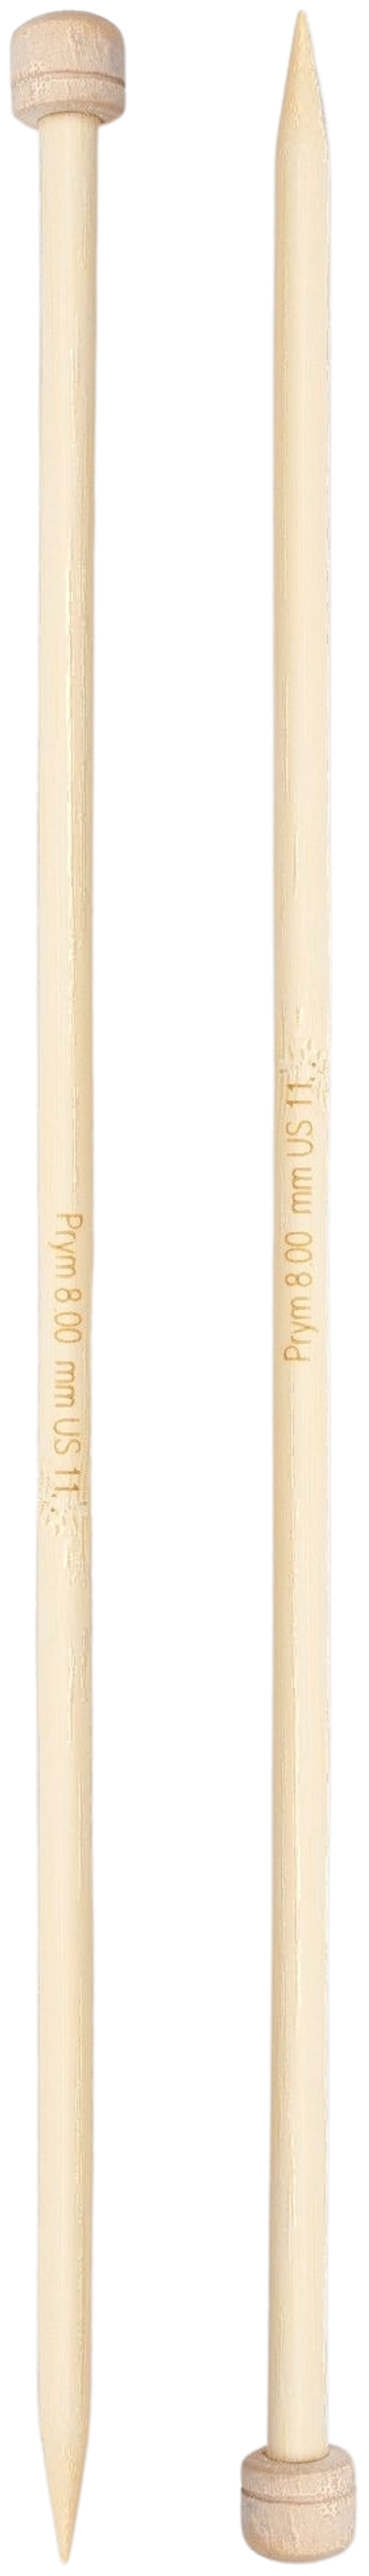 Prym neulepuikko 8,0 33cm bambu - 2